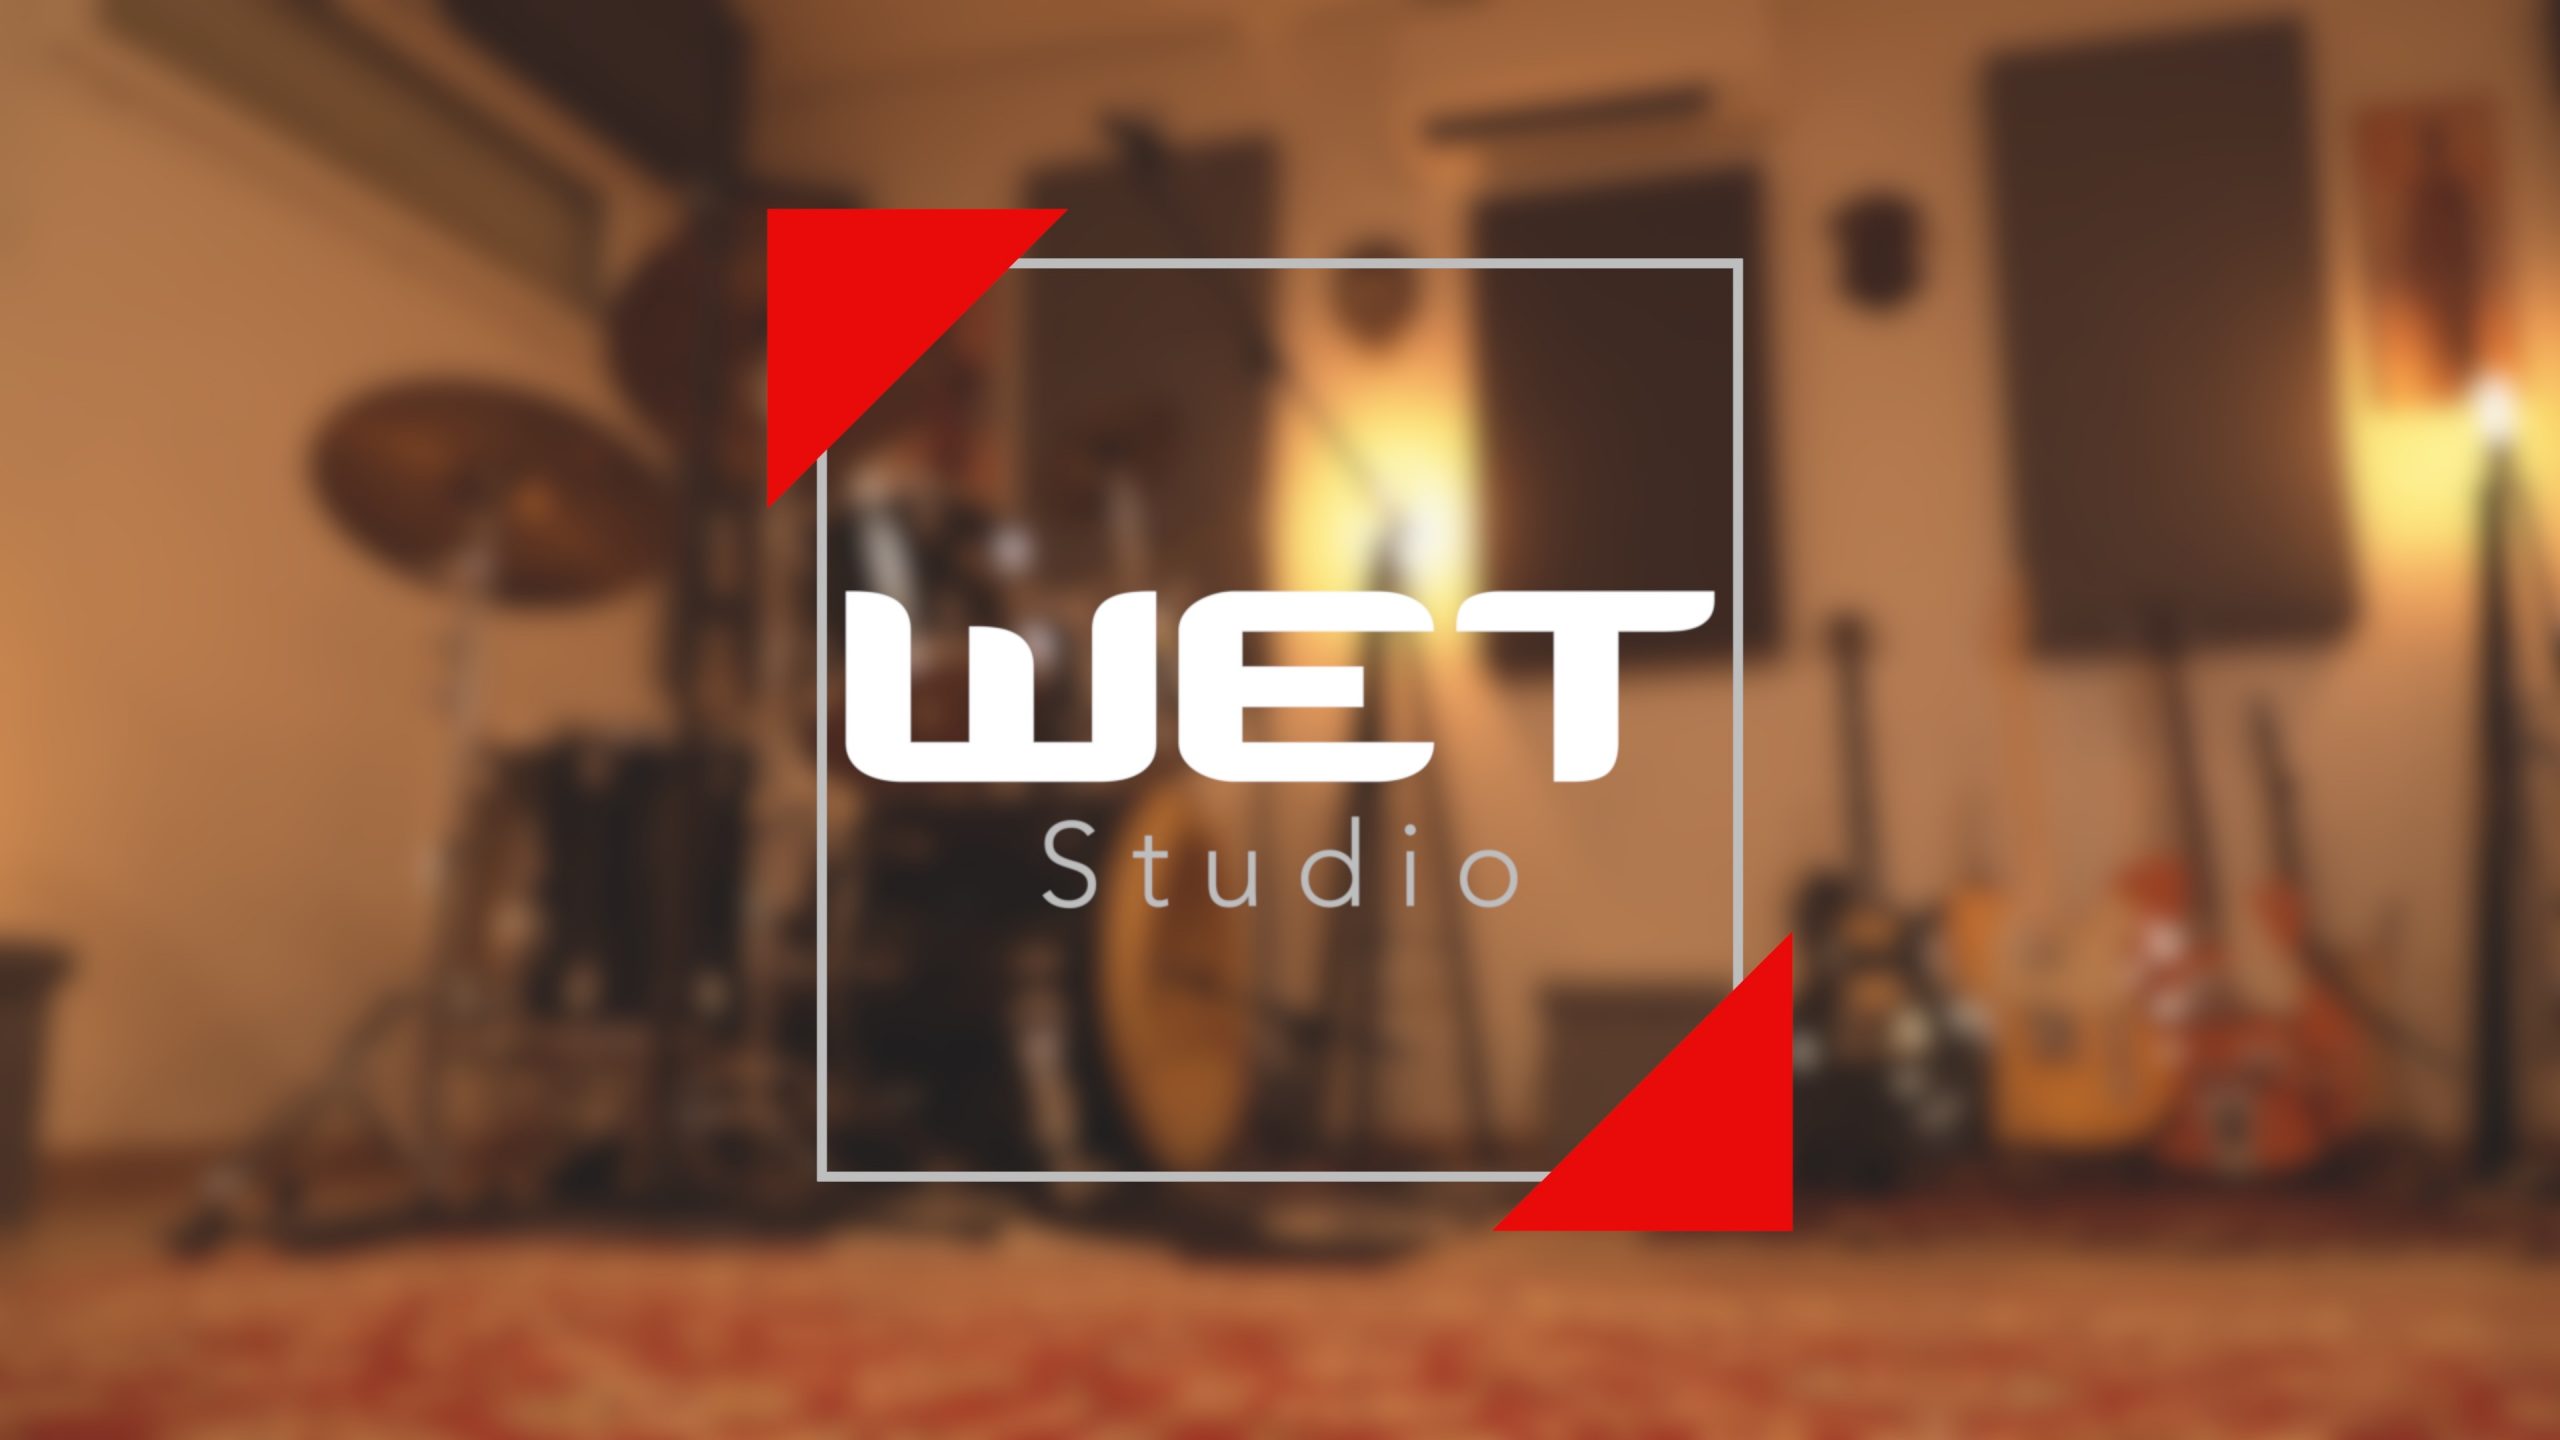 Présentation du WET Studio de MWproductions et de Matthieu Wassik musique voix off